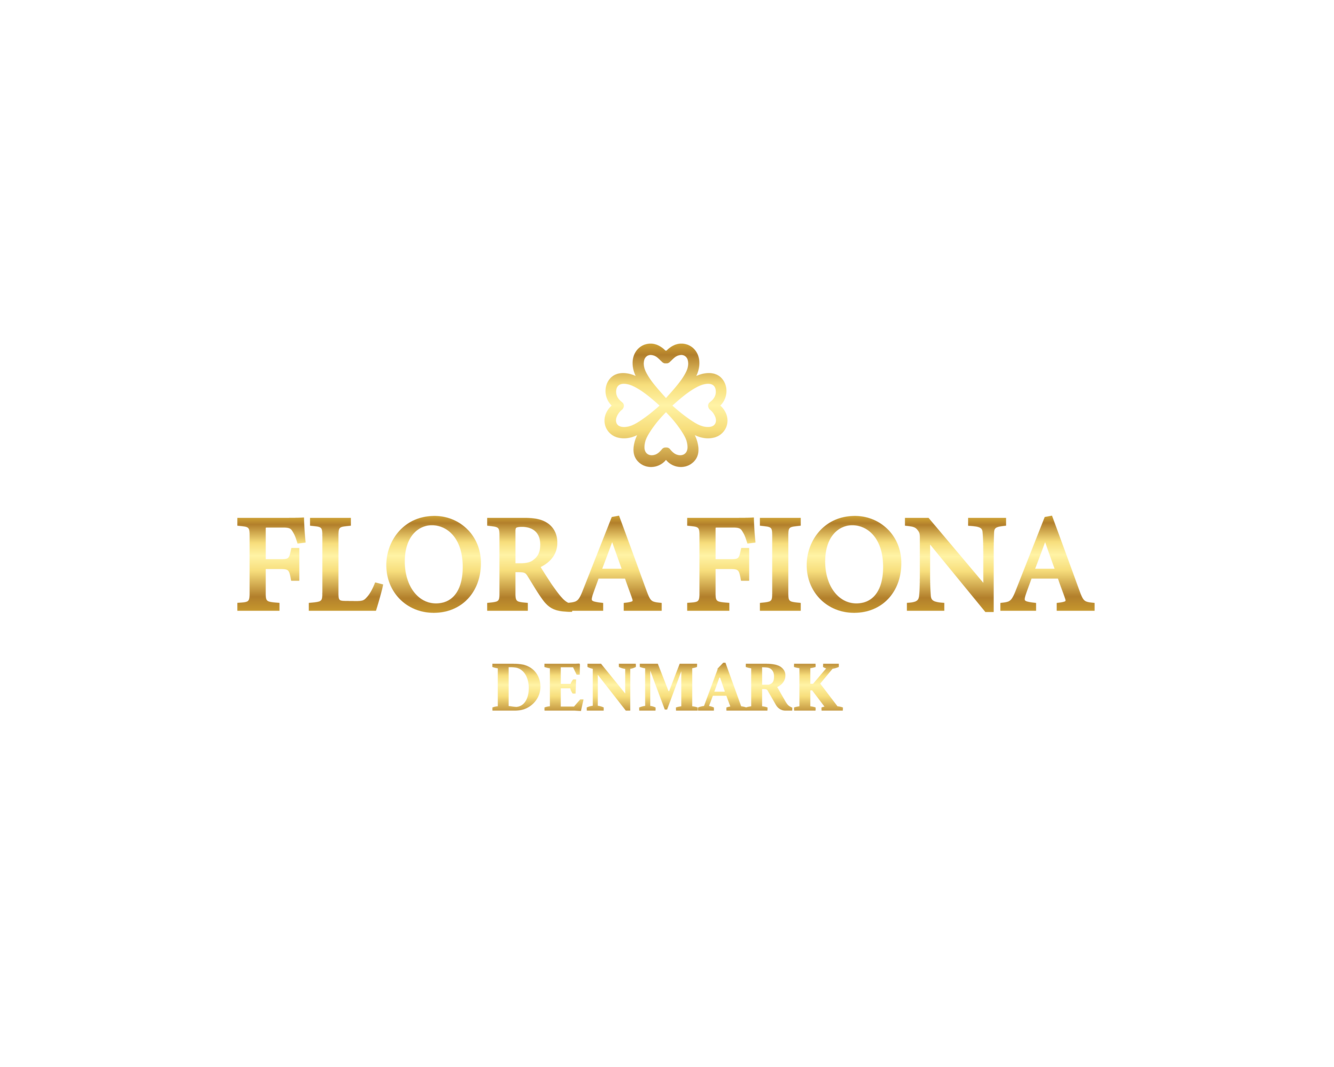 Flora Fiona